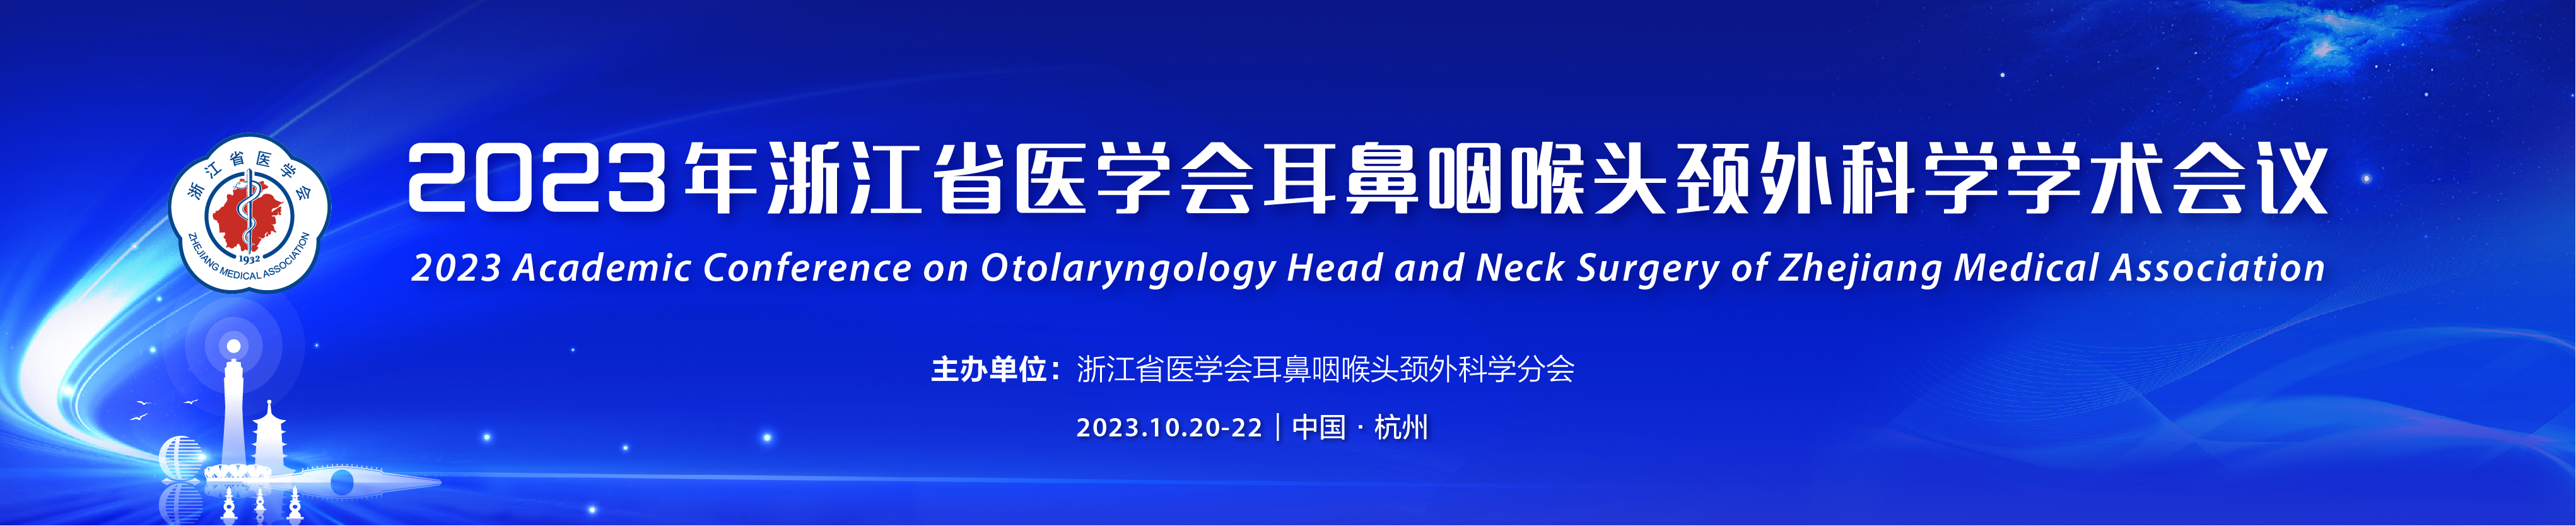 2023年浙江省医学会耳鼻咽喉头颈外科学学术会议